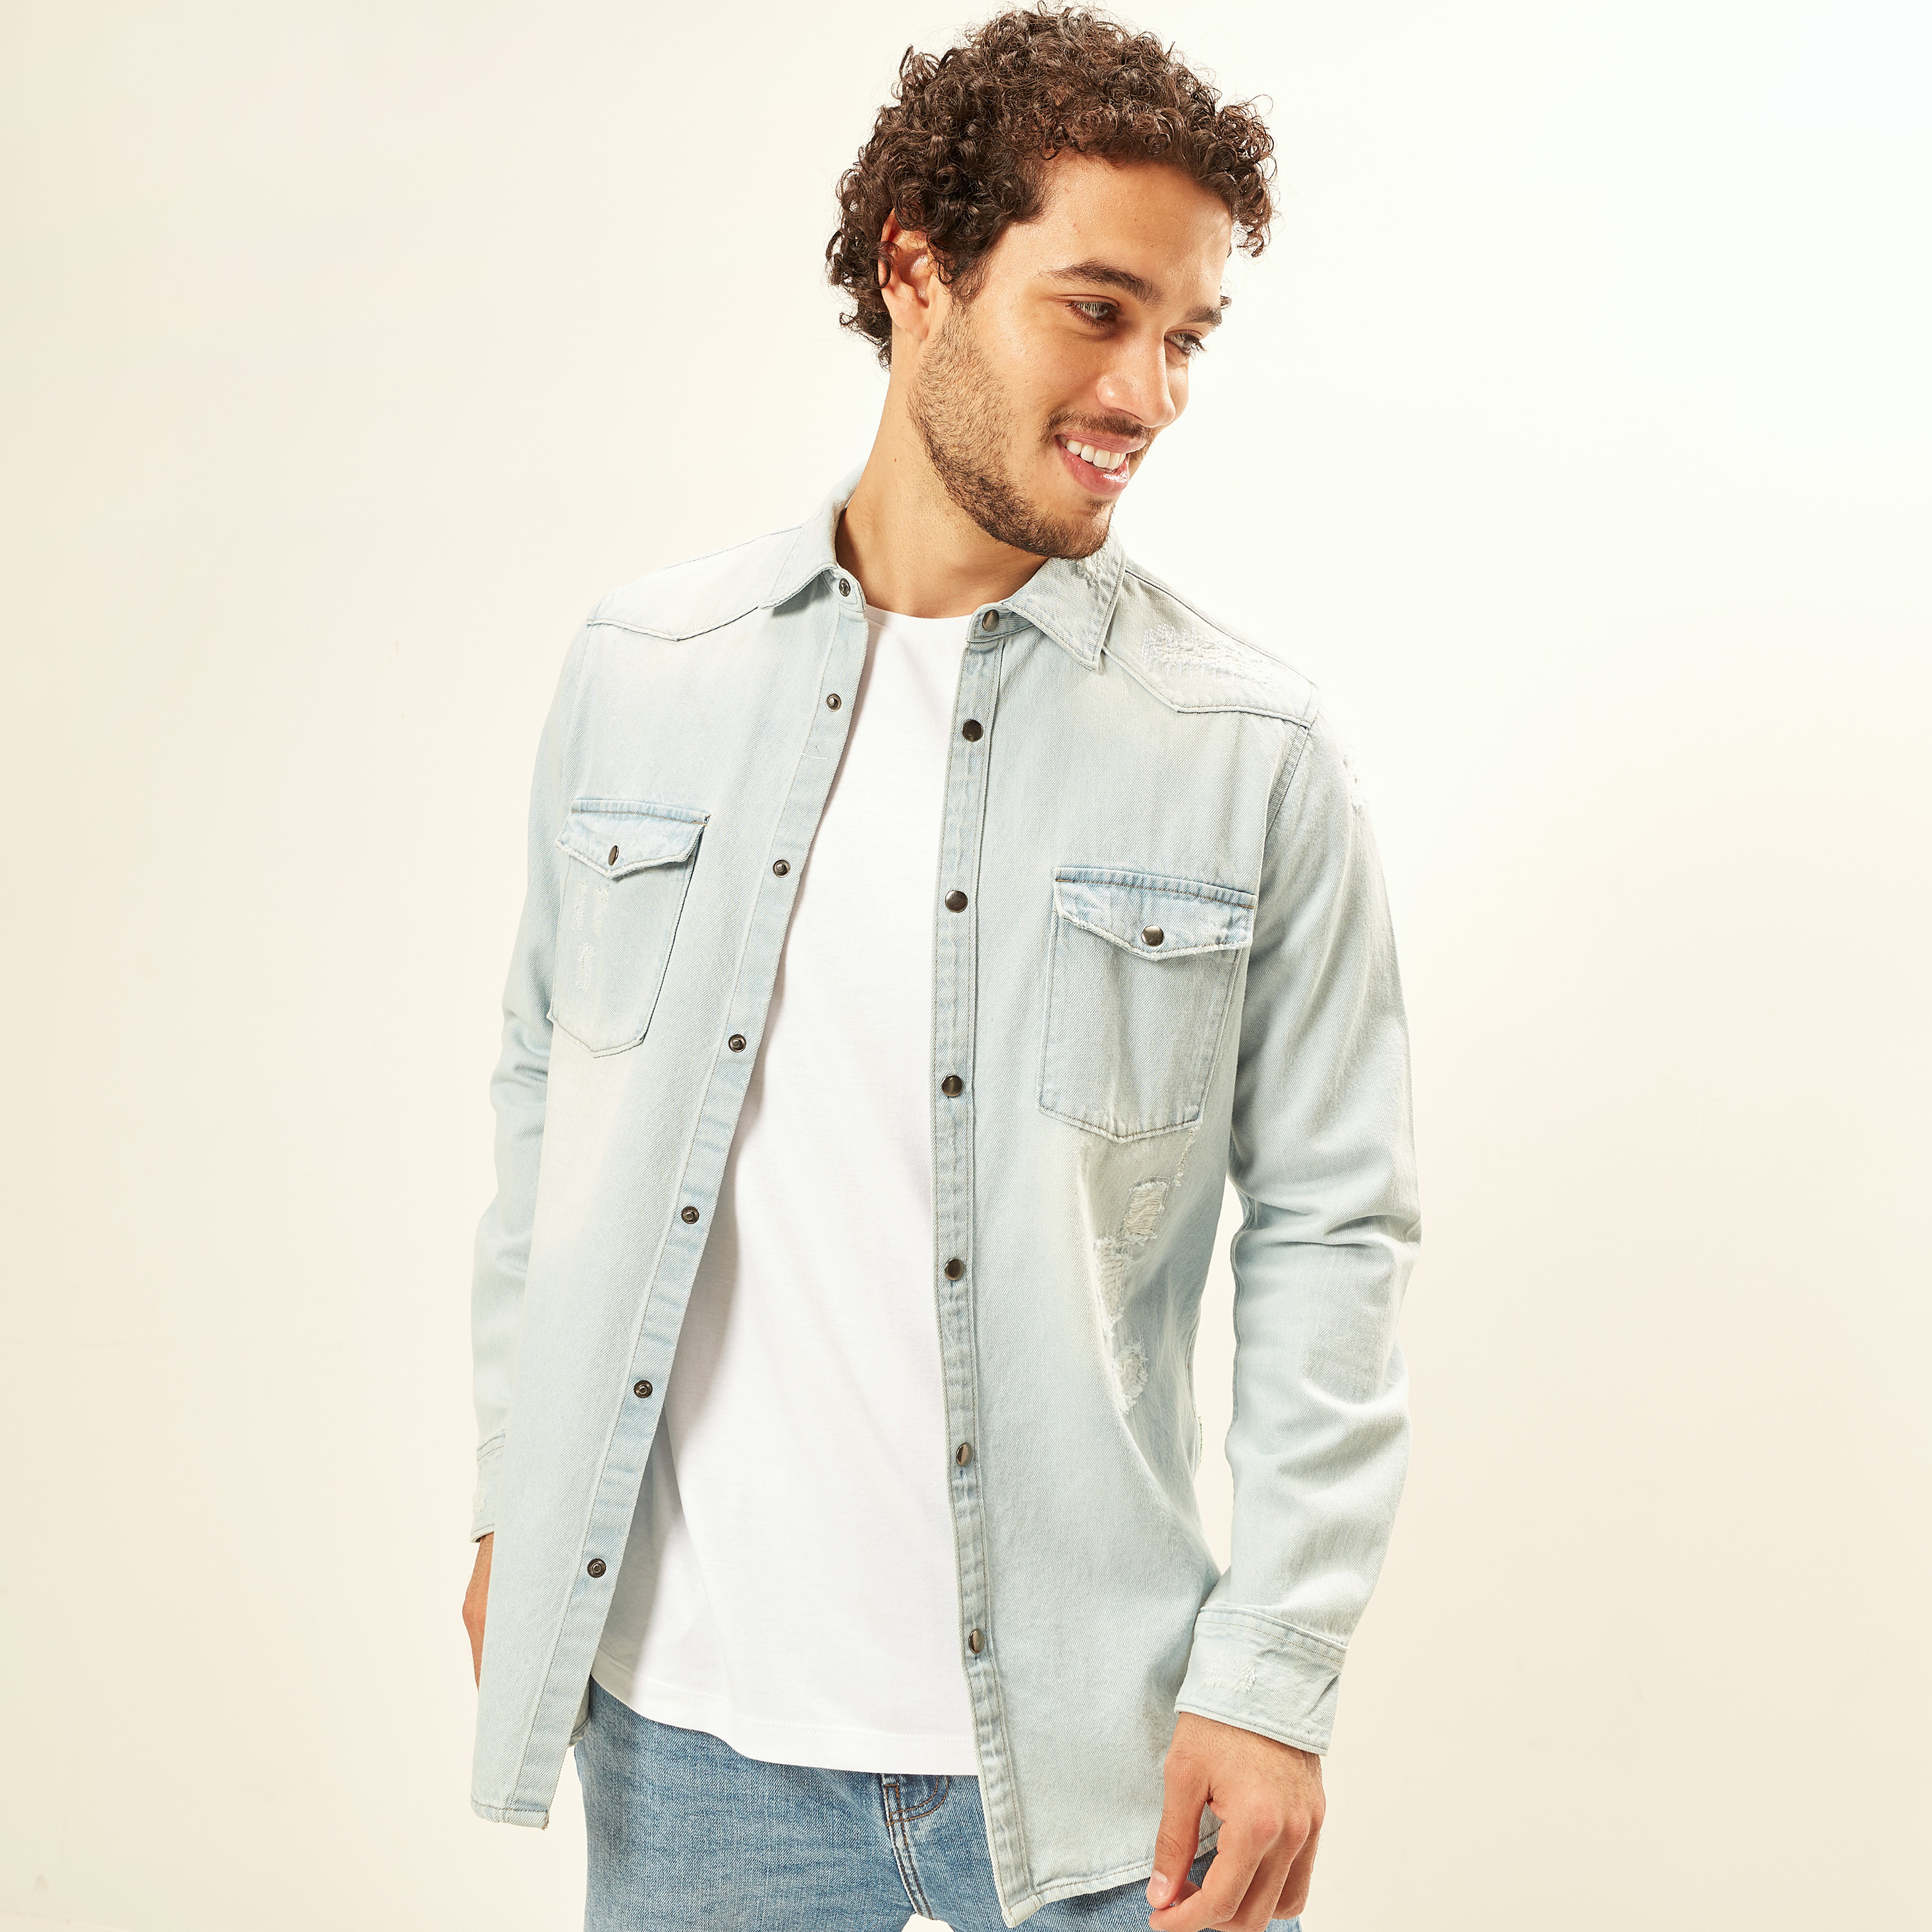 Splash Chest Pockets Denim Jacket For Men - Light Blue, S: Buy Online at  Best Price in Egypt - Souq is now Amazon.eg